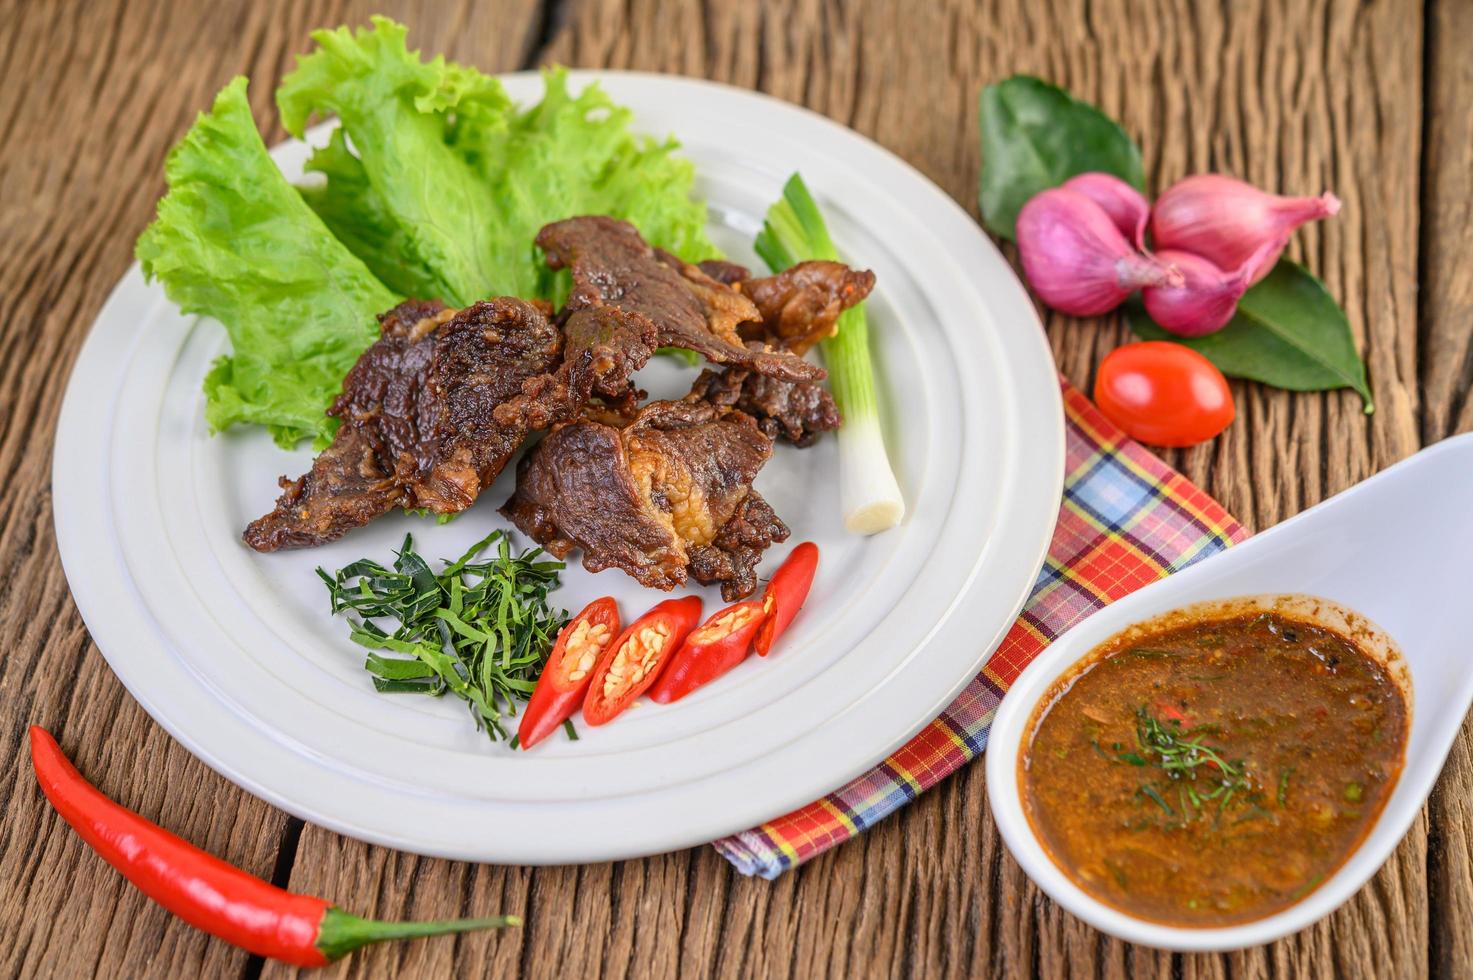 nötkött stekt thailändsk mat på träbord foto